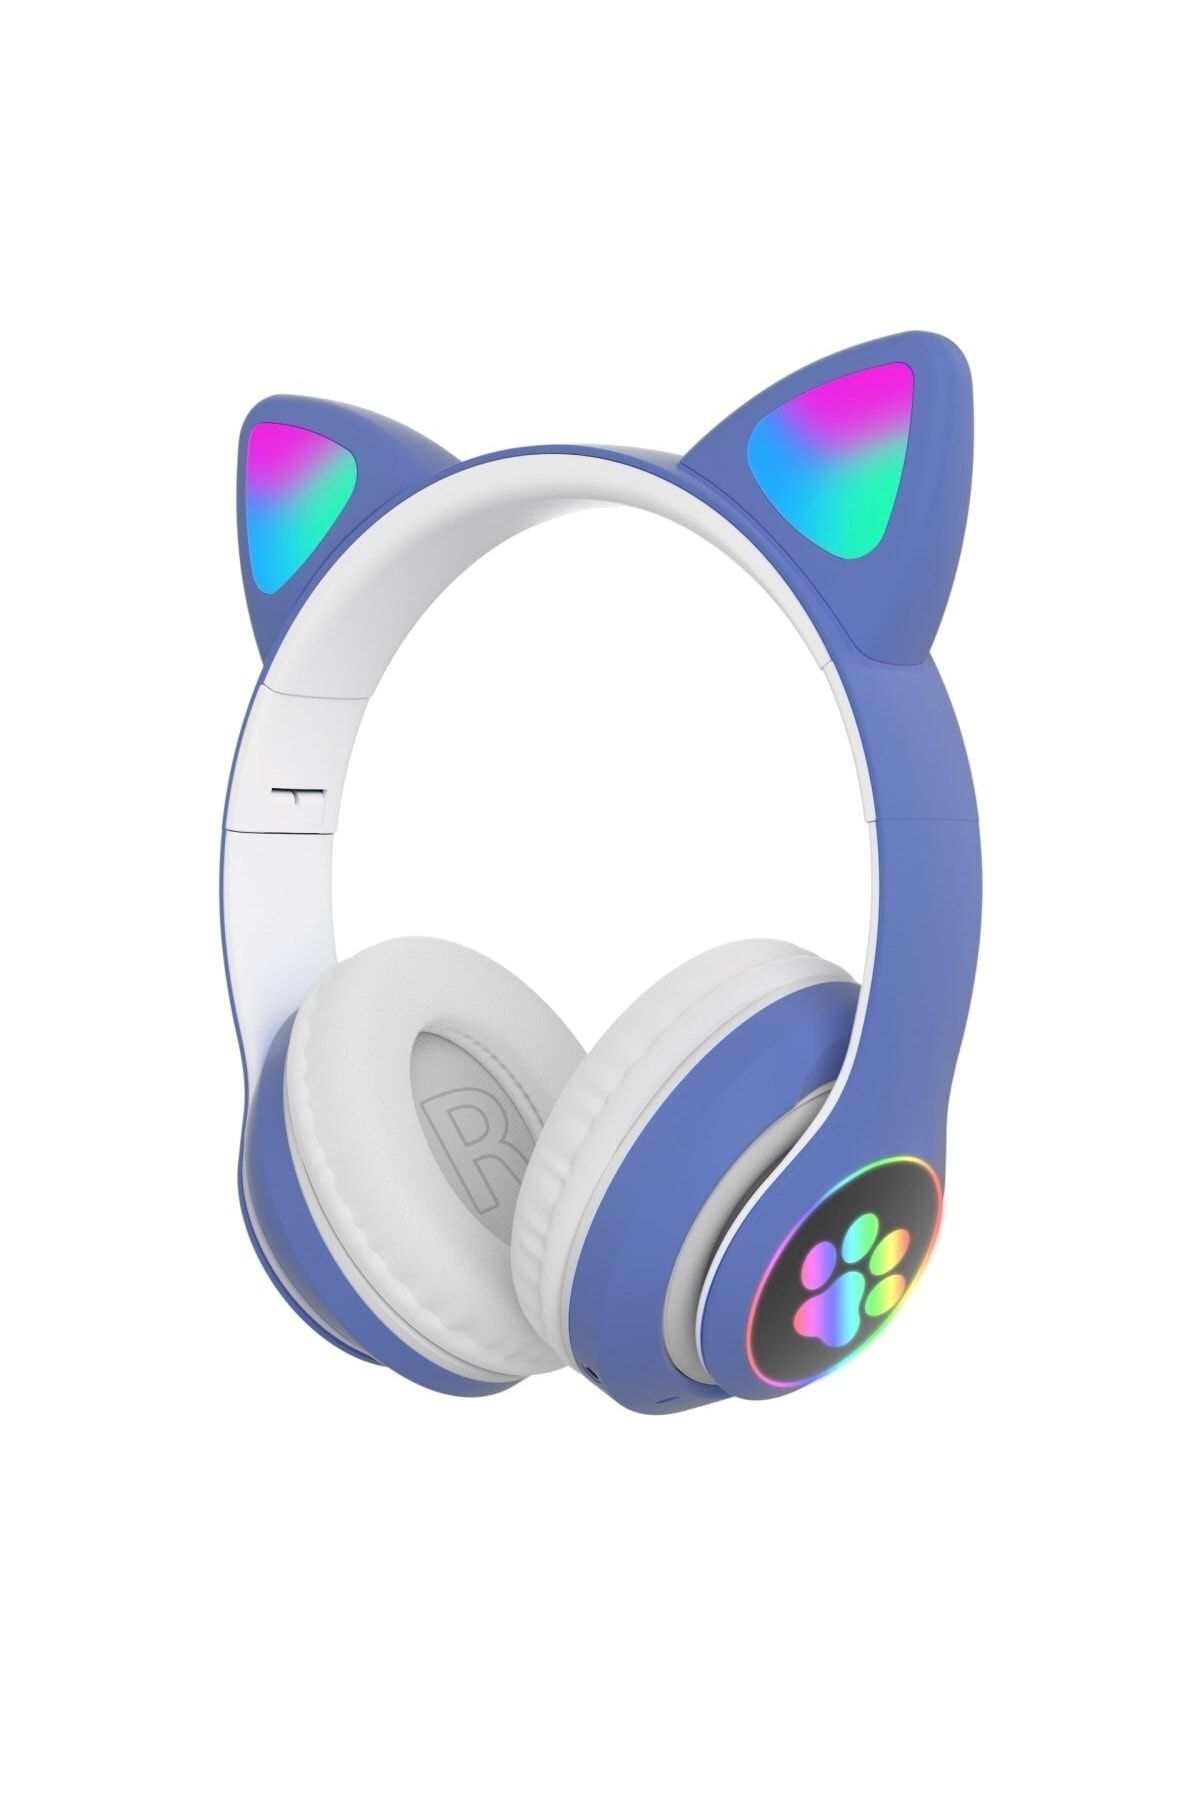 Forland Kart Girişli Kedi Bluetooth Kulaklık Yüksek Ses Akıllı Led Kulaklık + 12 Saat Fazla Şarj